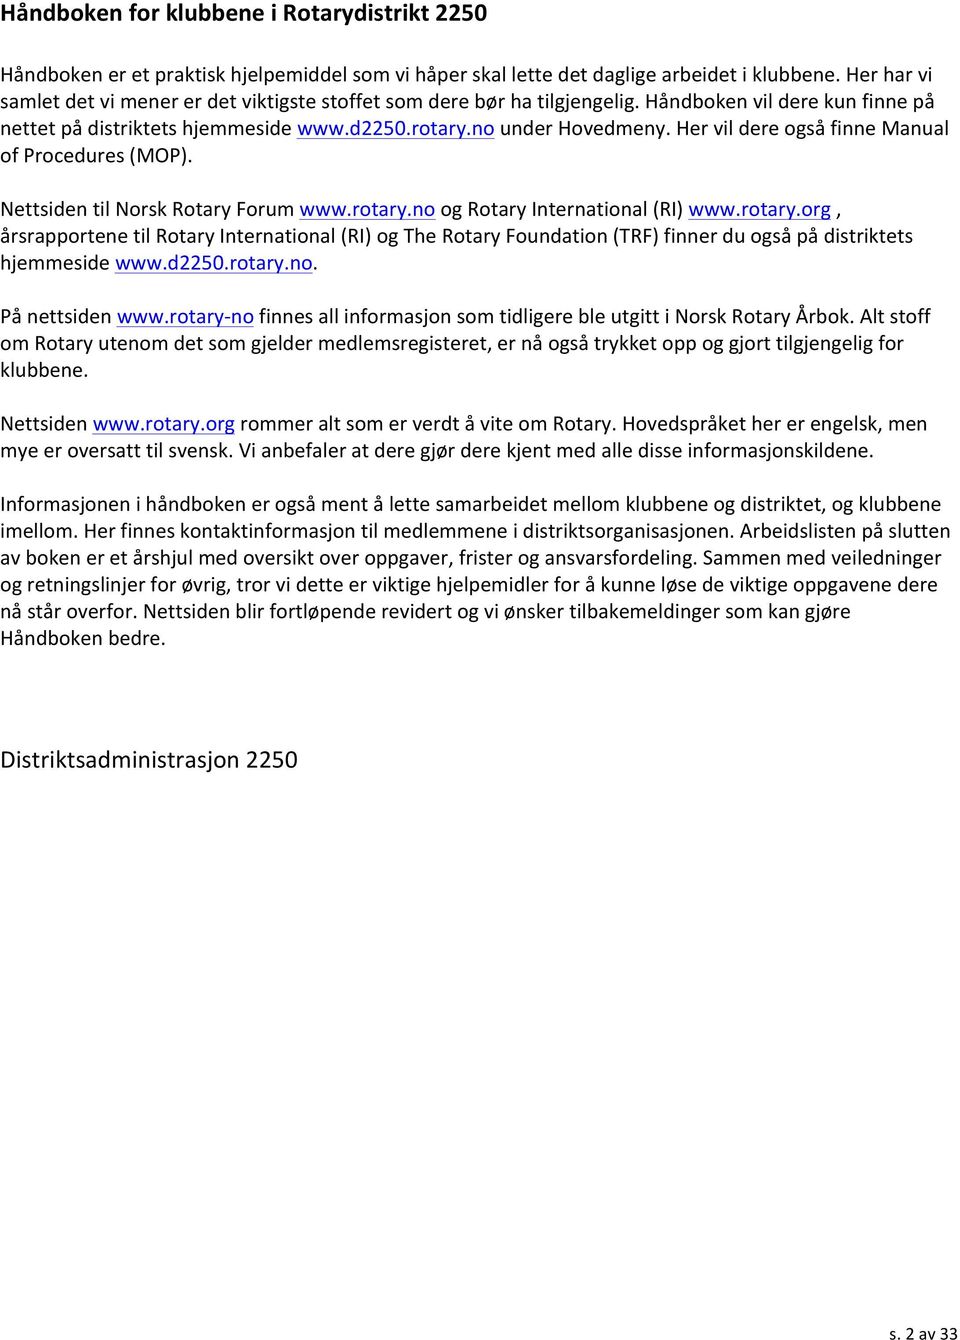 Her vil dere også finne Manual of Procedures (MOP). Nettsiden til Norsk Rotary Forum www.rotary.